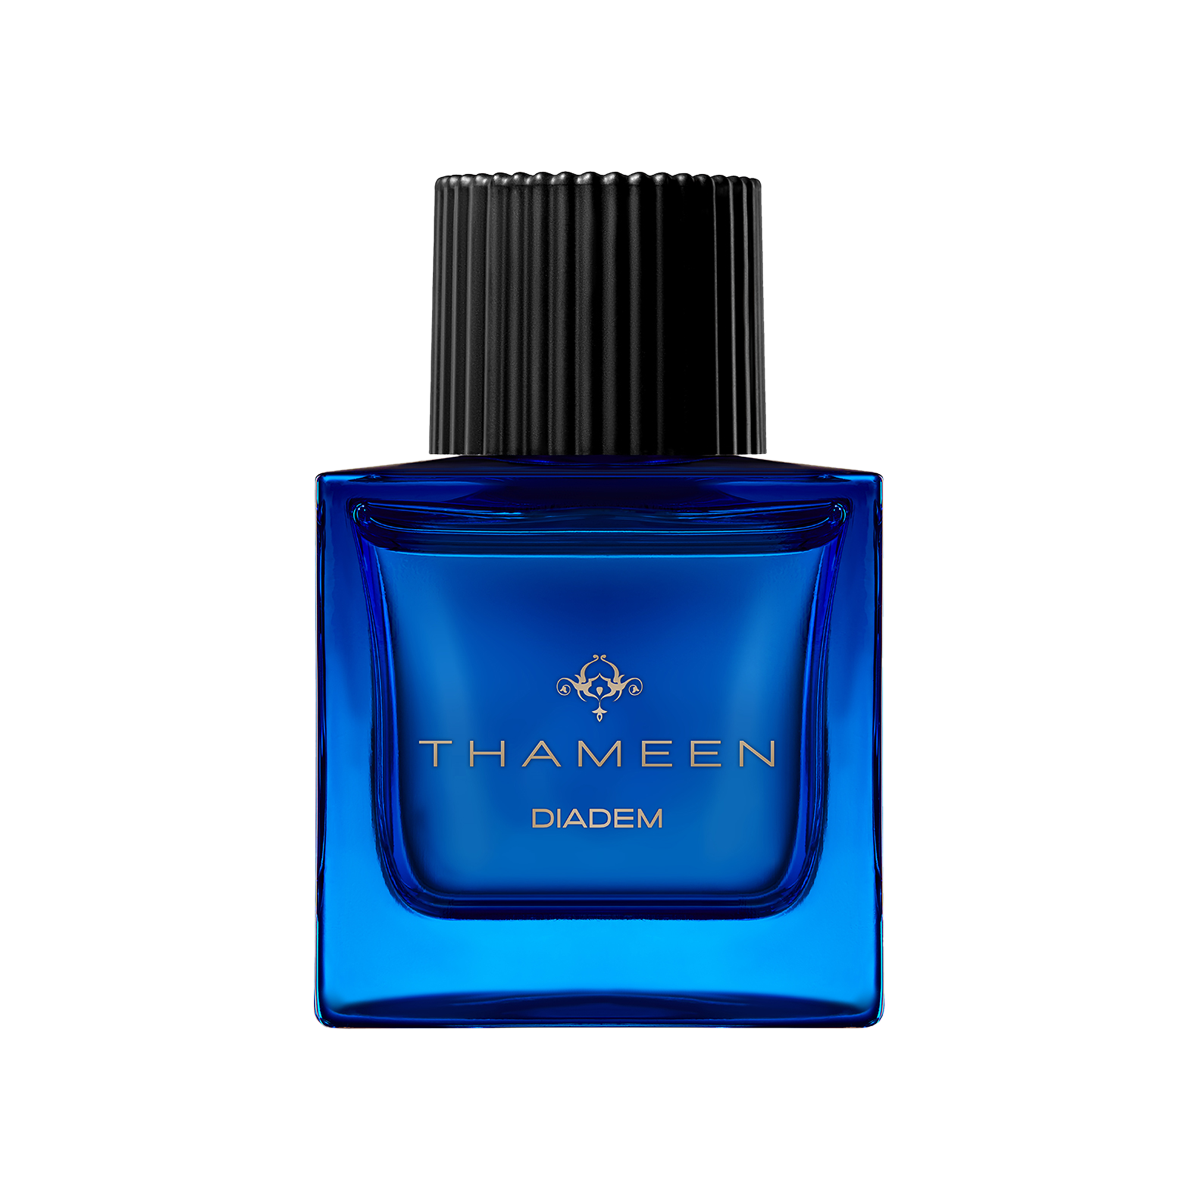 Thameen London - Diadem Extrait de Parfum